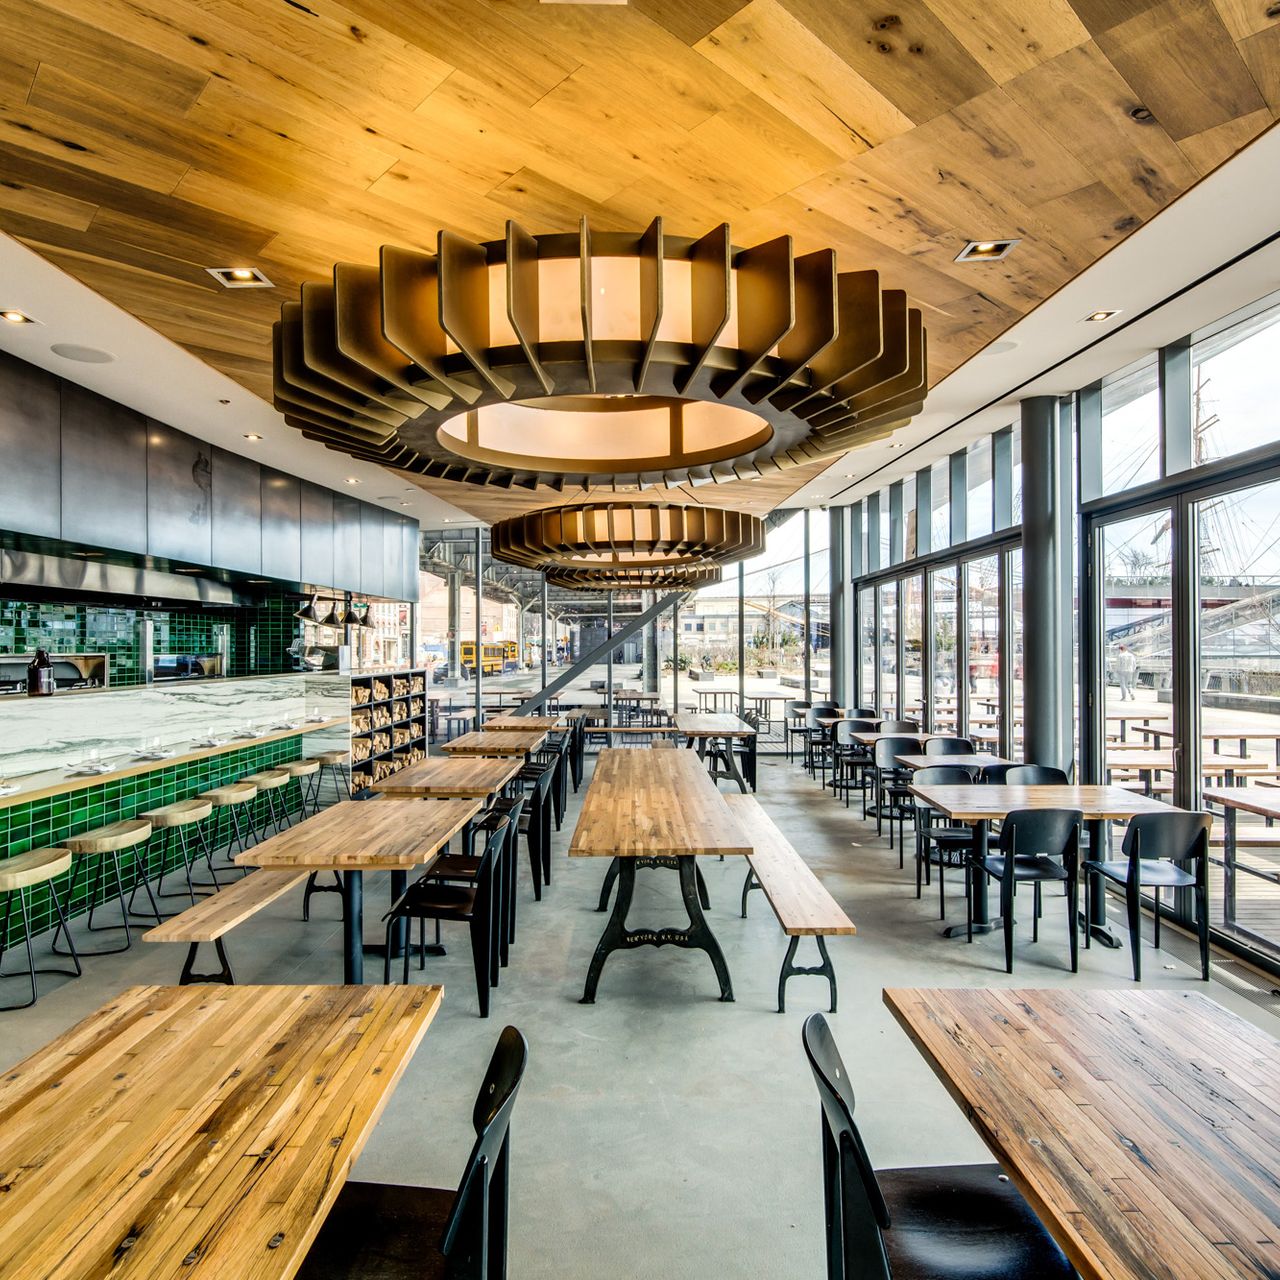 Industry Kitchen waterfront restaurants NYC
brunch in FiDi